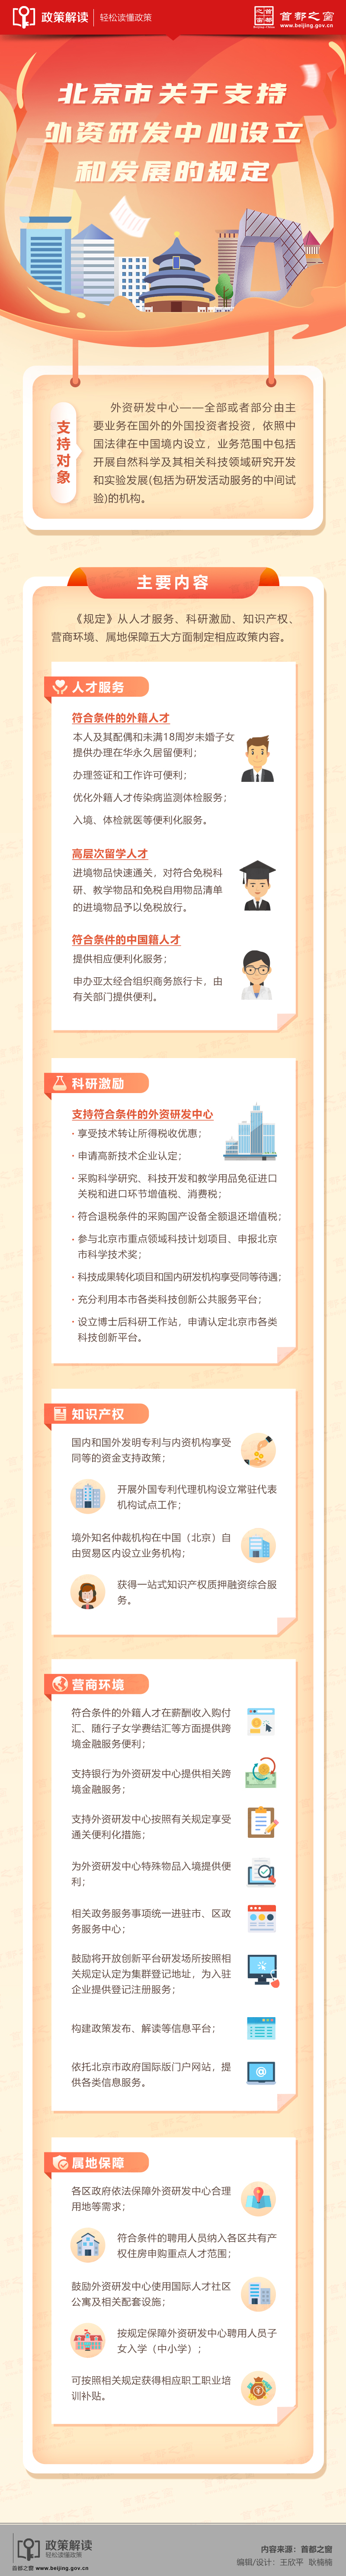 4.14图解：《北京市关于支持外资研发中心设立和发展的规定》.jpg